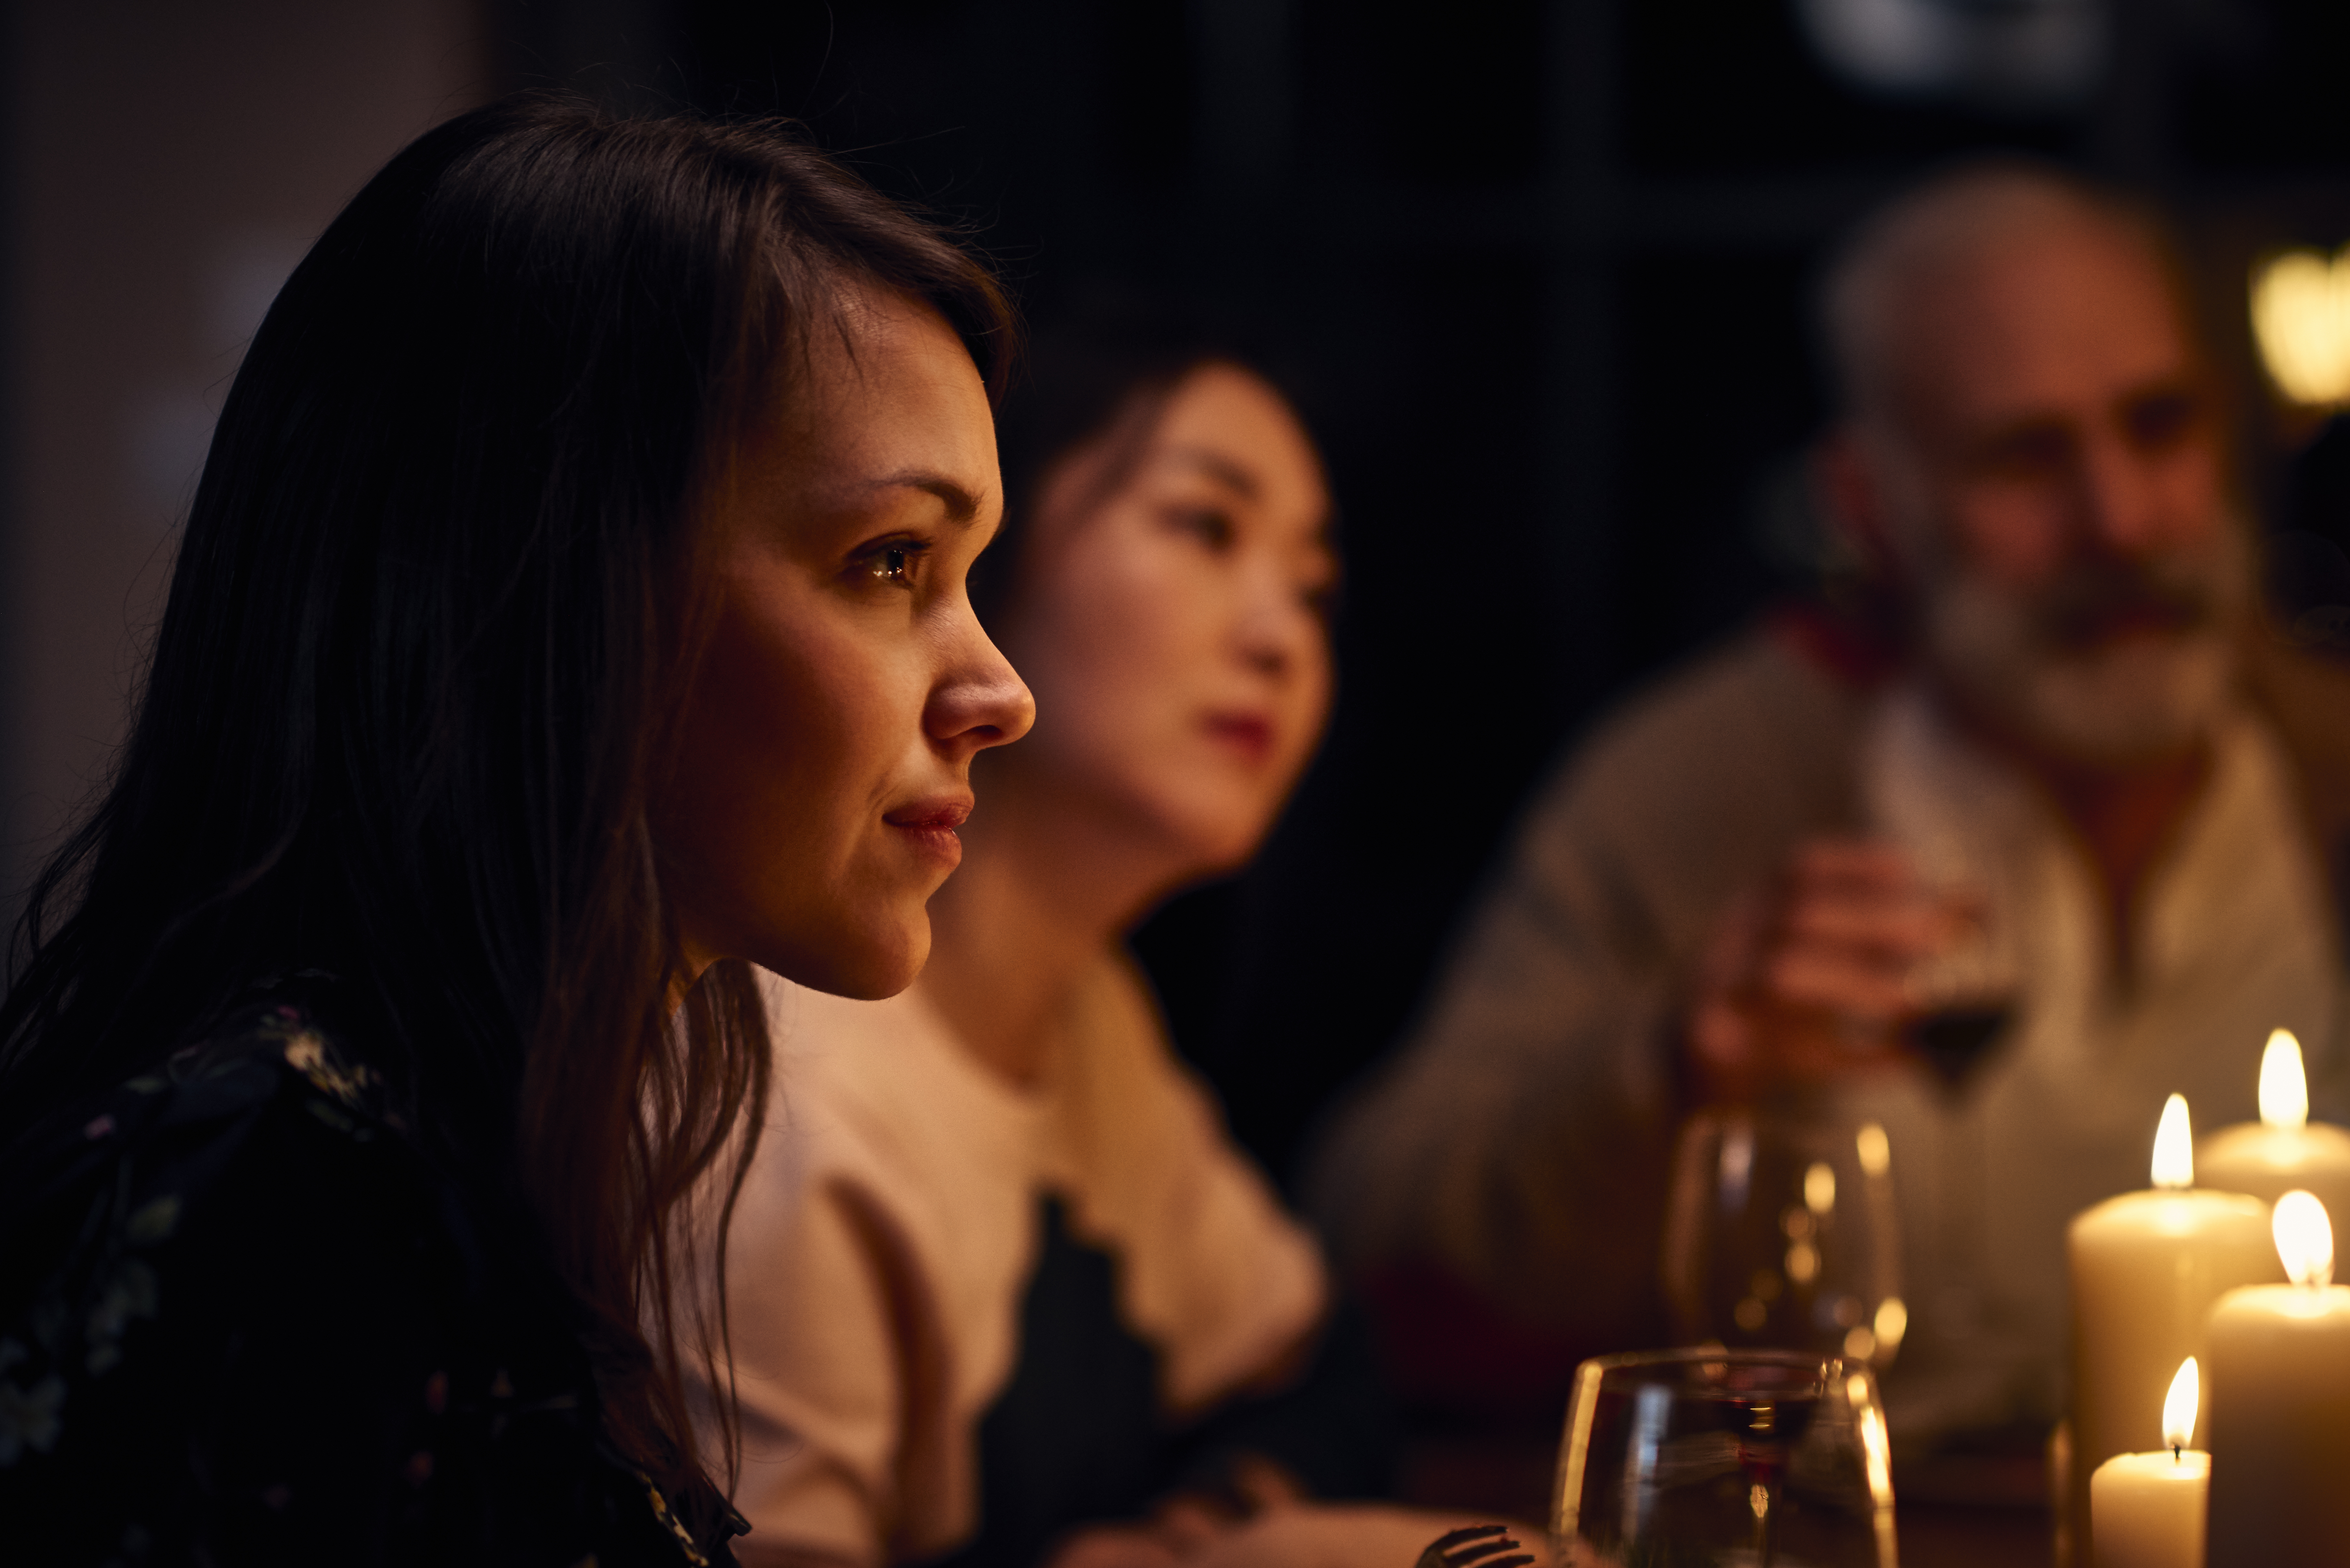 Gelassen wirkende Frau bei einer Dinnerparty, die aufmerksam zuhört | Quelle: Getty Images